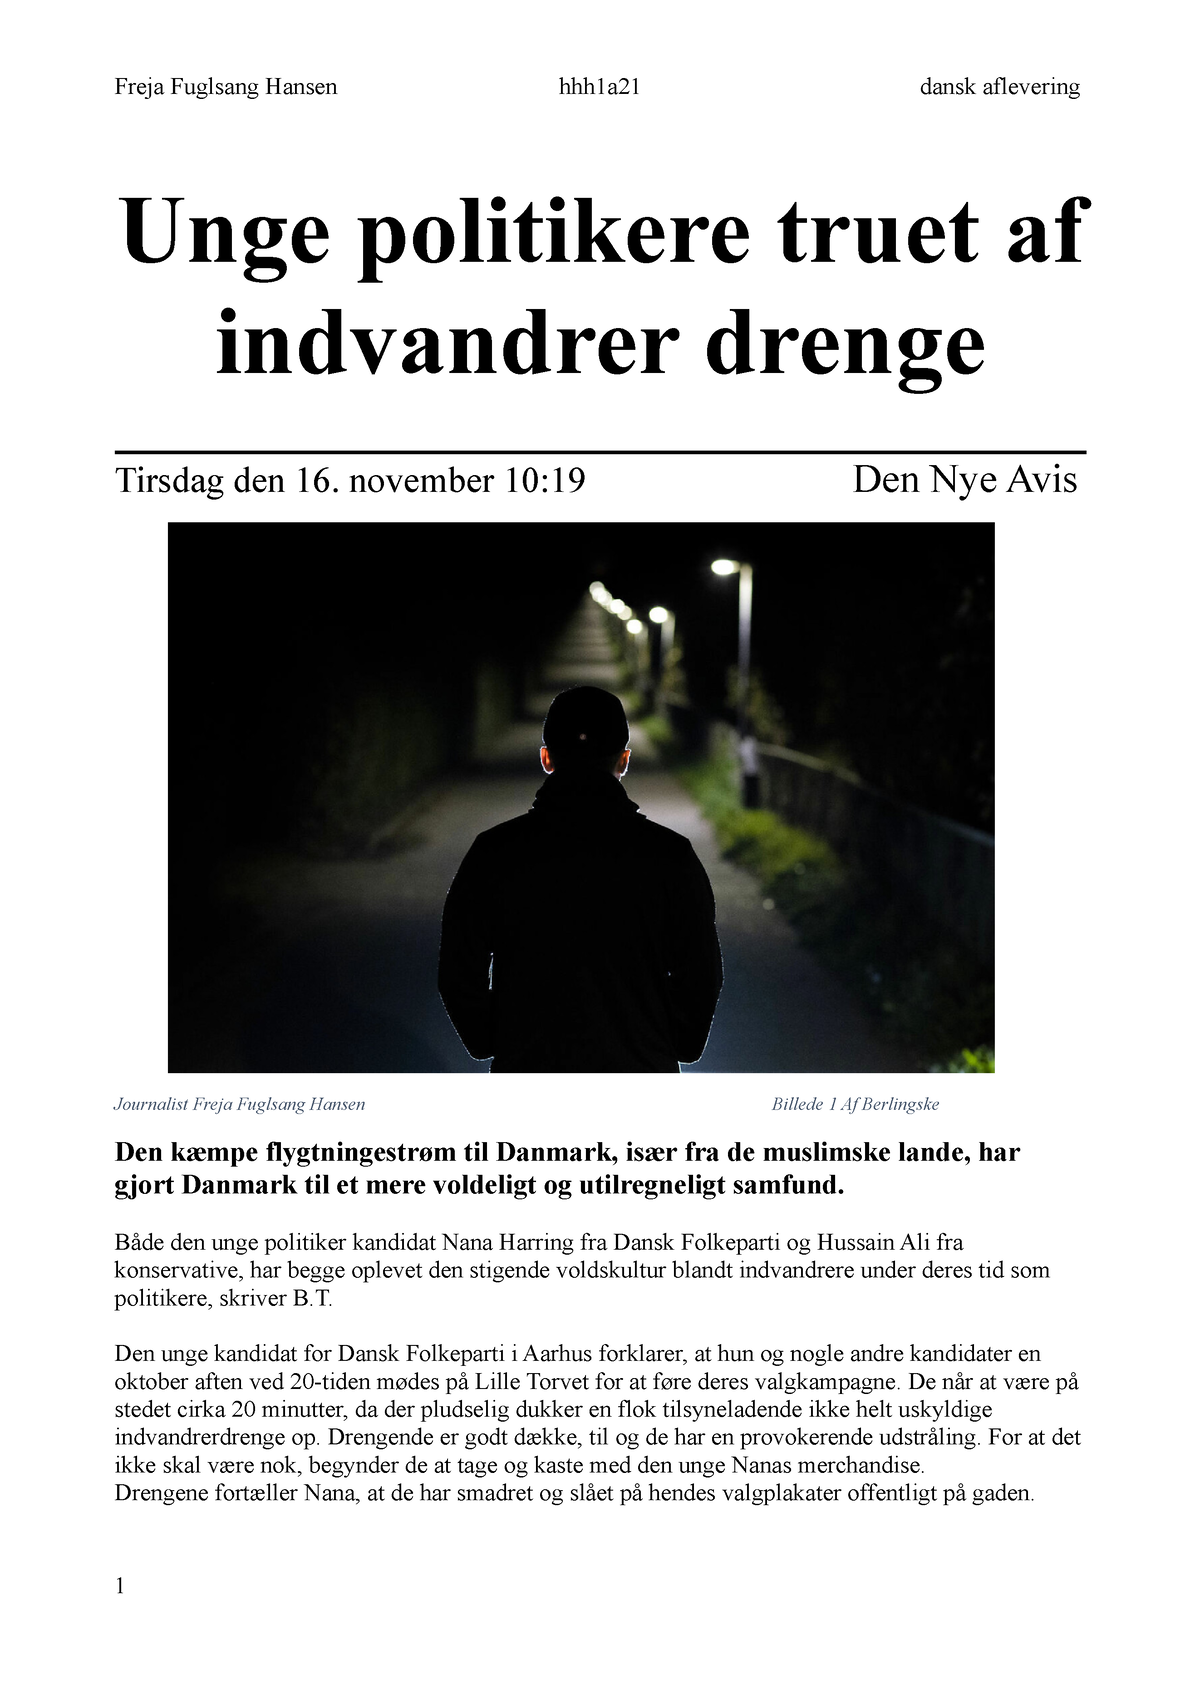 Unge politikkere af indvandrer drenge - Freja hhh1a21 dansk aflevering Unge - Studocu